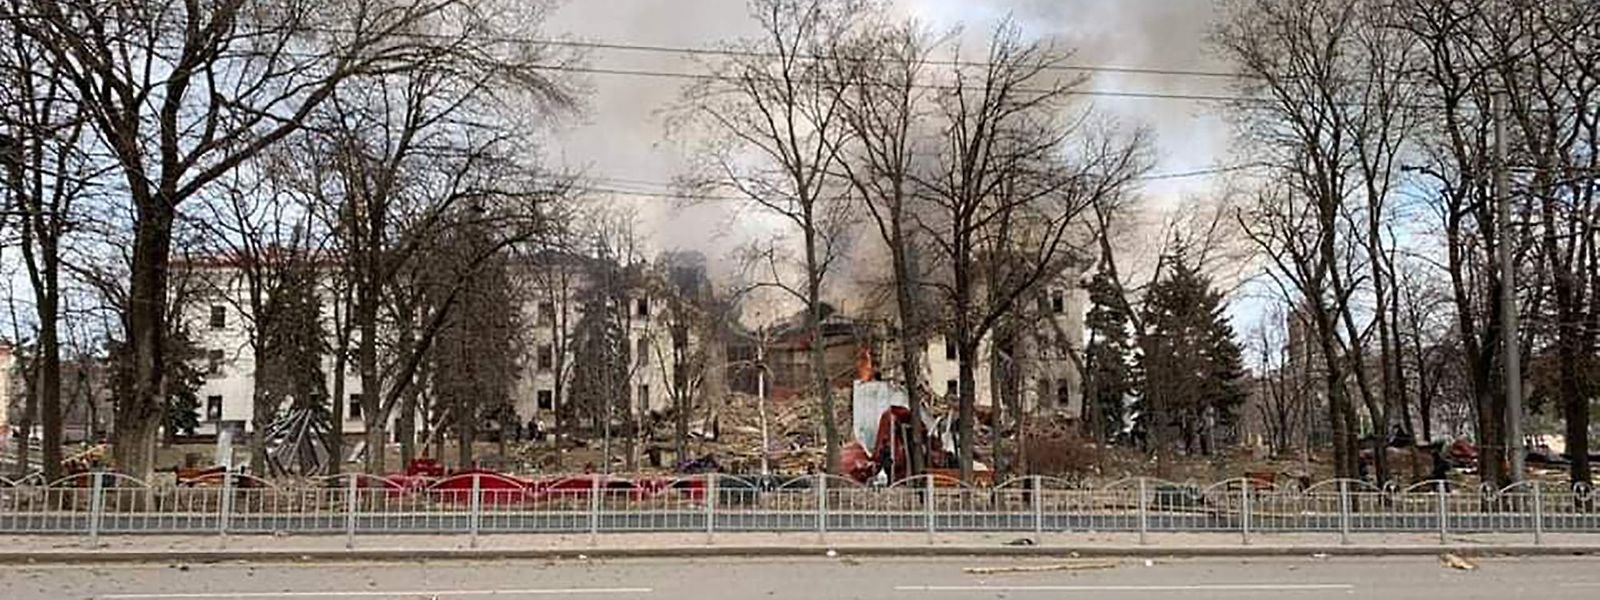 Imagem publicada na conta de Telegrama do governador da região de Donetsk, Pavlo Kirilenko, mostra a destruição de teatro no centro de Mariupol.